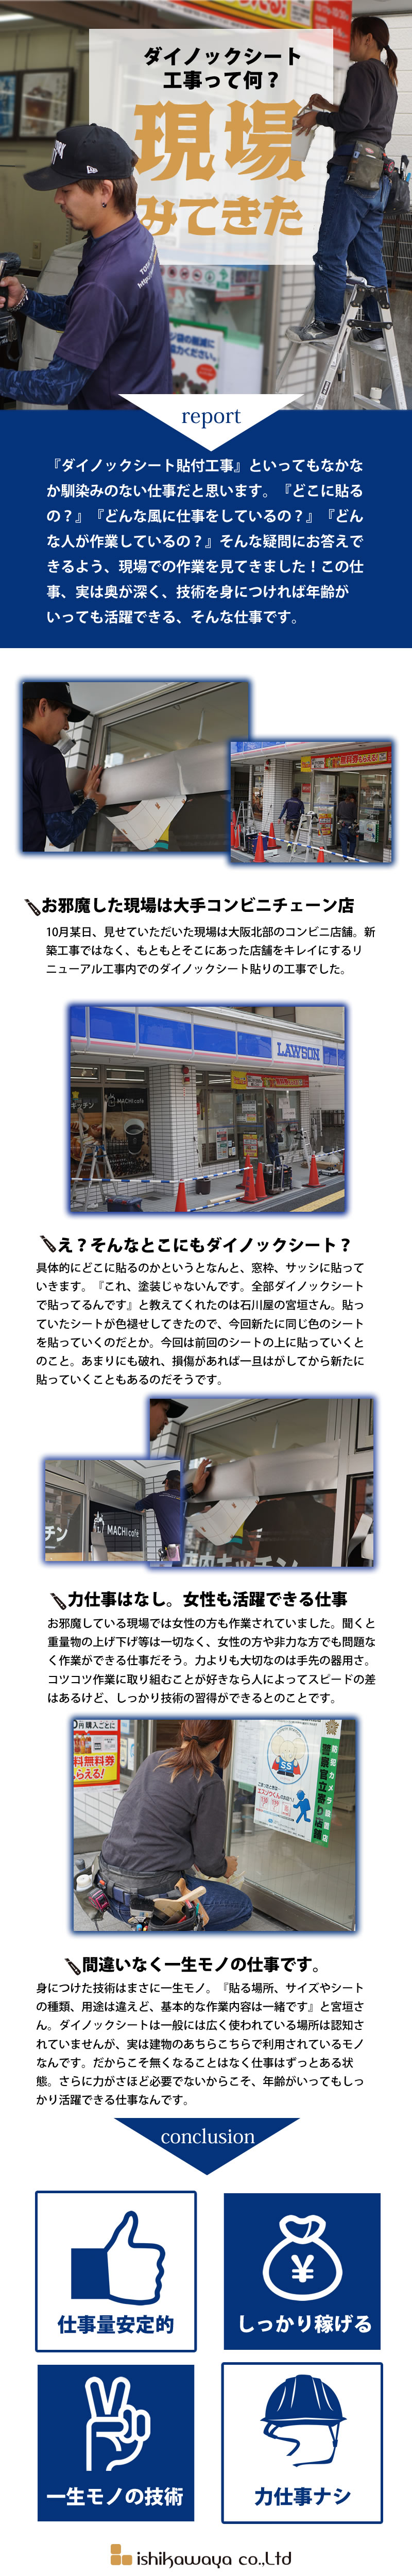 【内装工(ダイノックシート)　求人募集】-大阪府摂津市-　空間イメージを変える、そんな仕事です!